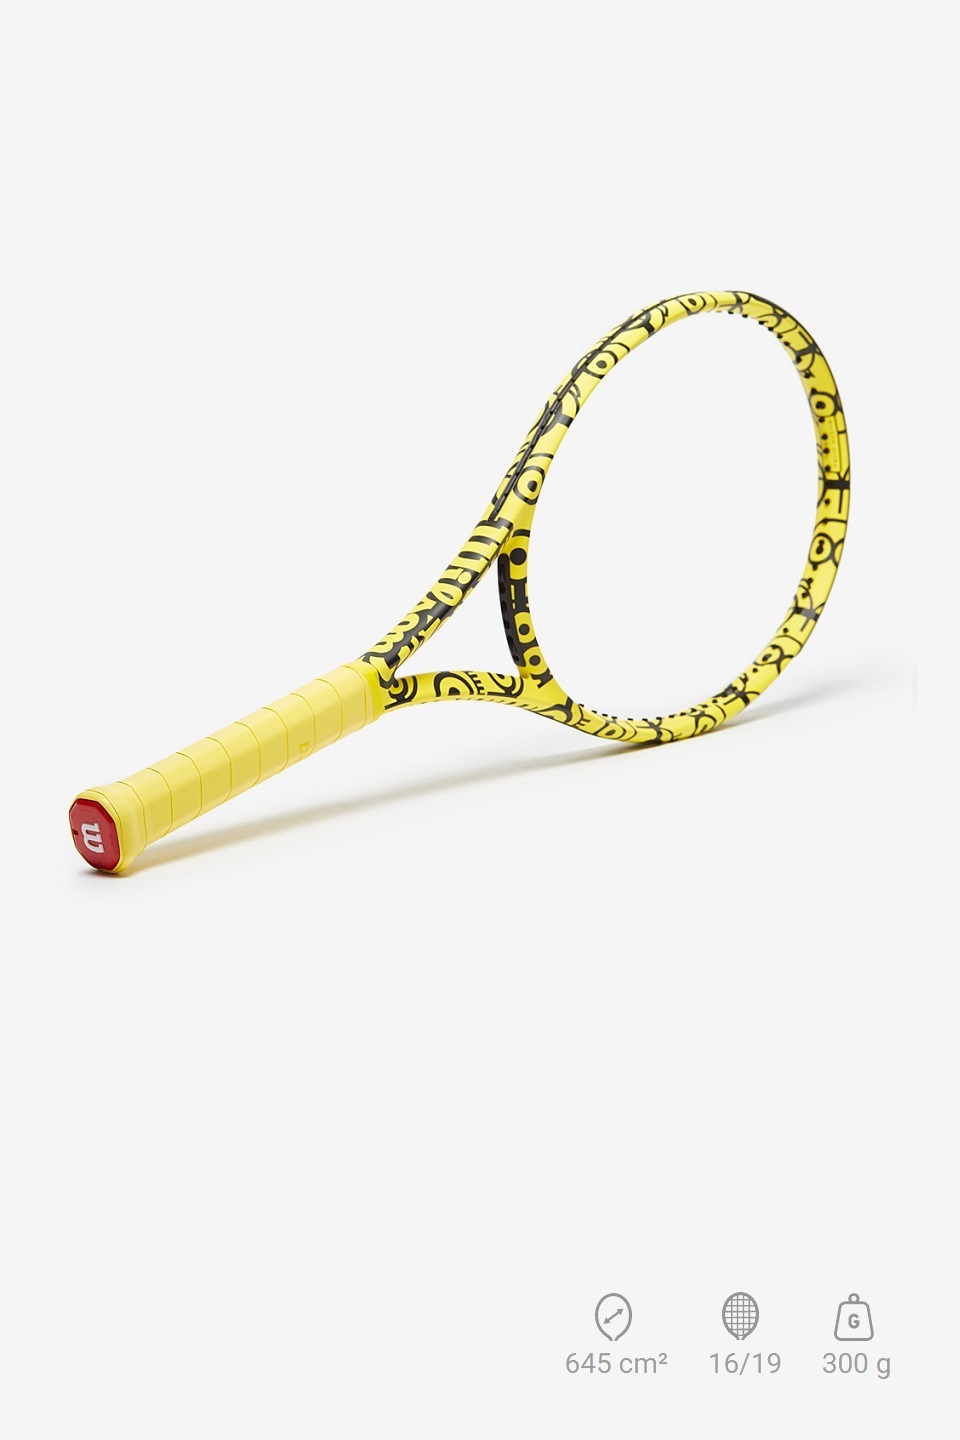 WİLSON - Wilson Minions Ultra 100 Tenis Raketi 